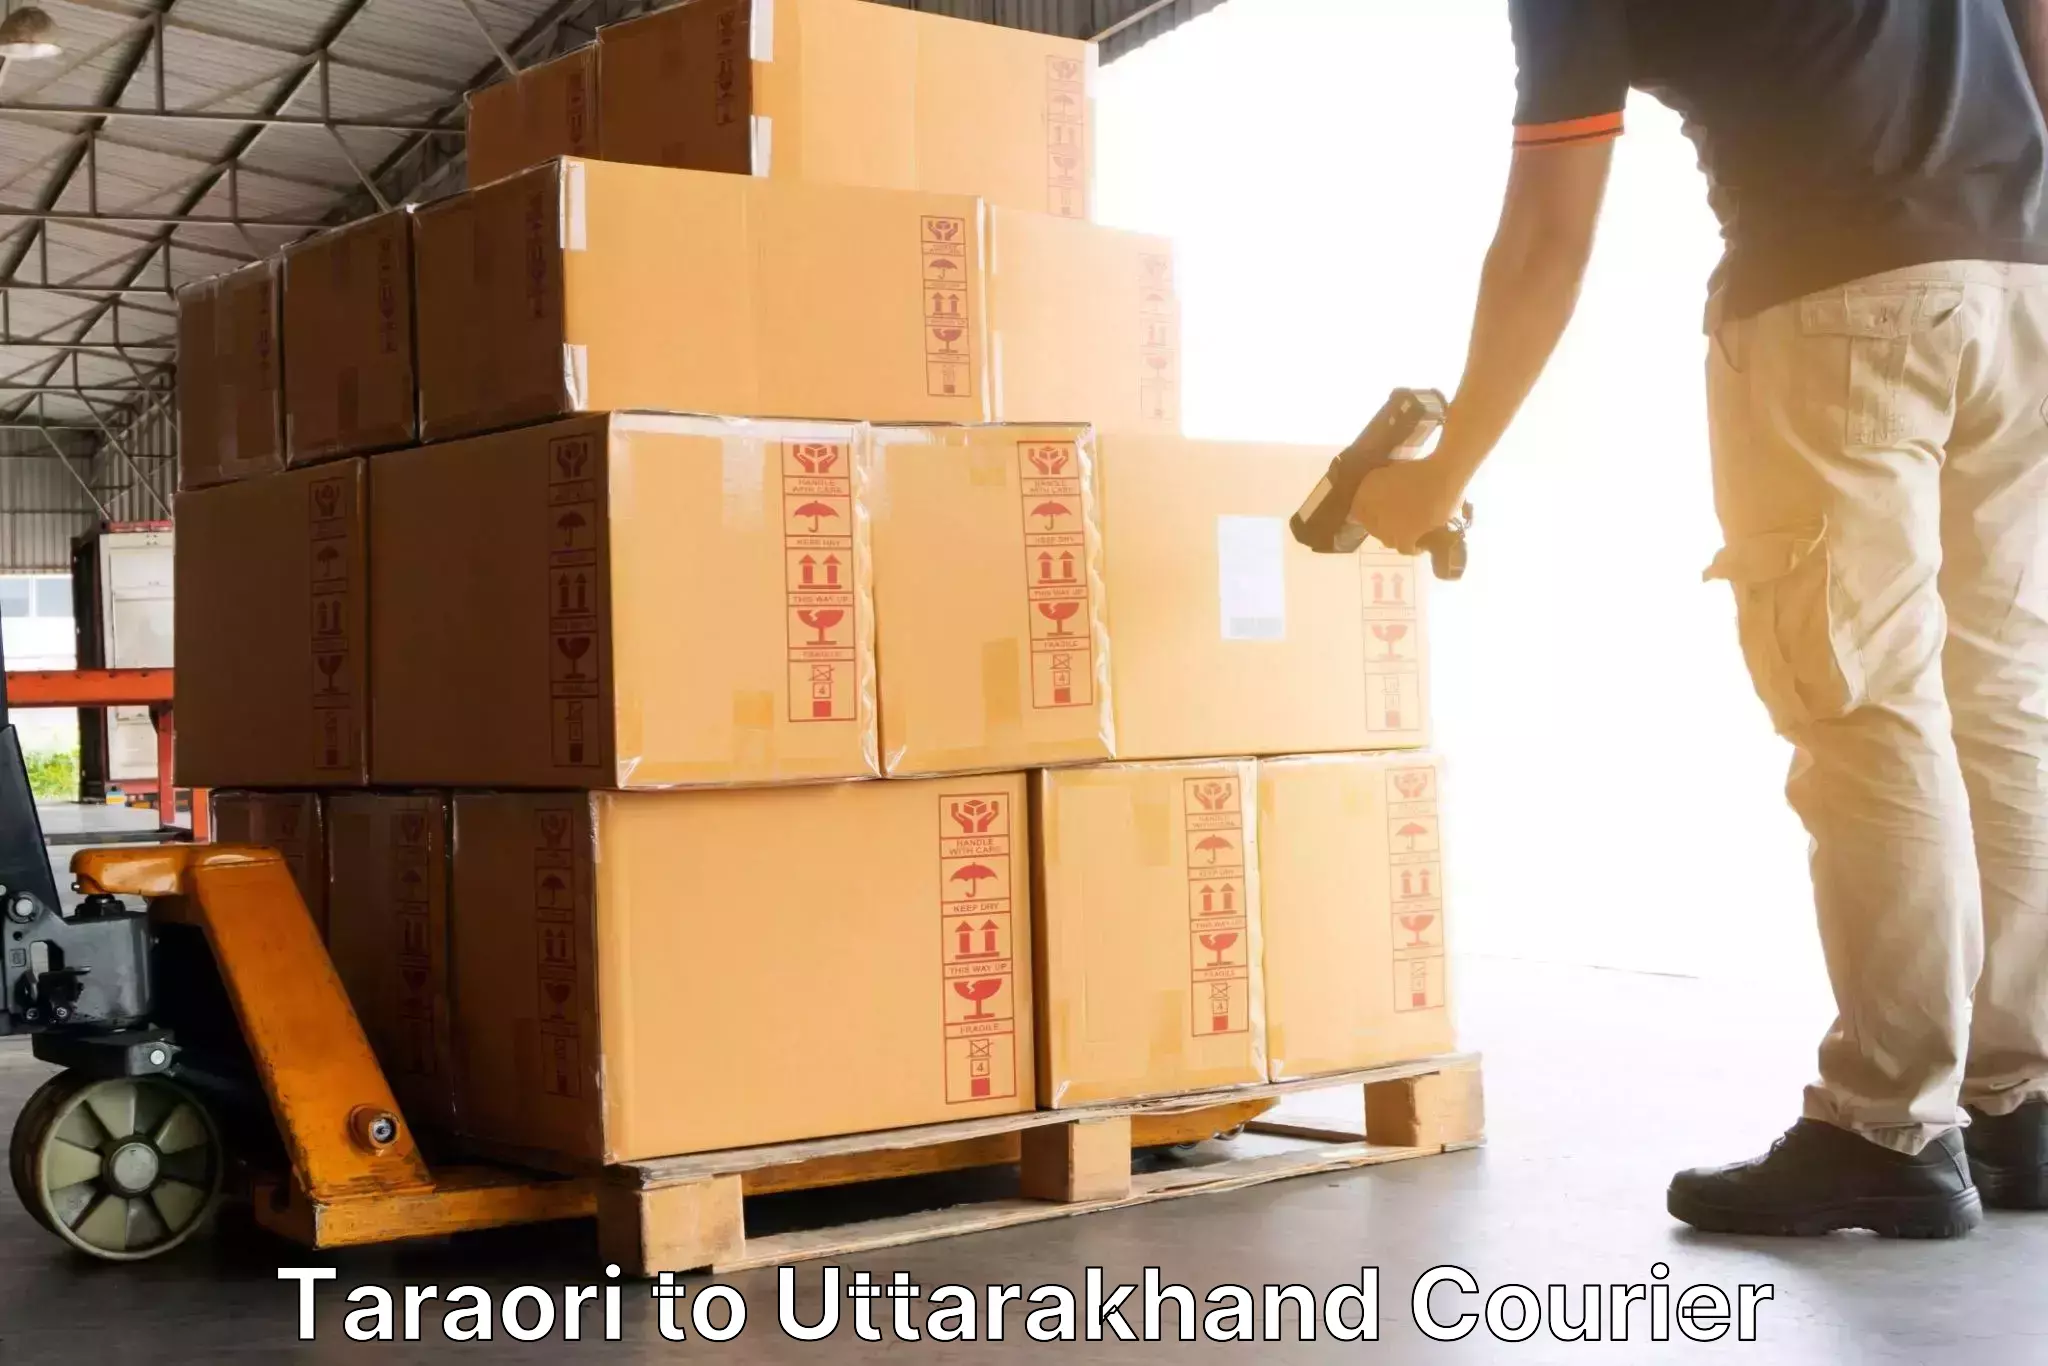 Express courier facilities Taraori to Dehradun